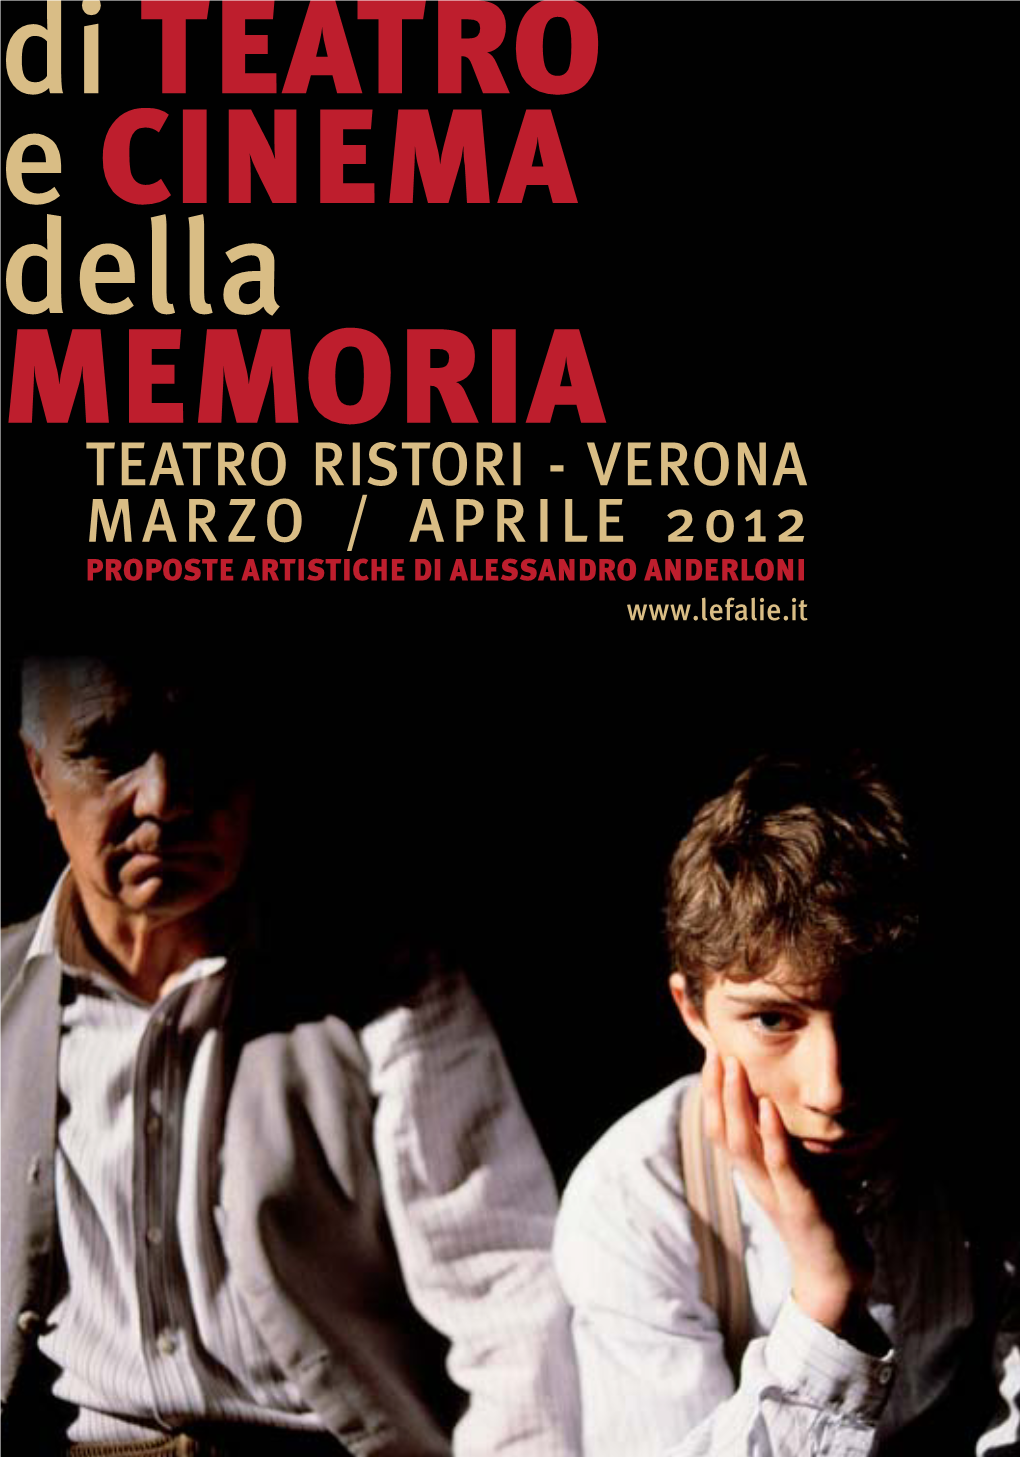 Teatro Cinema Memoria Teatro Ristori 2012.Indd